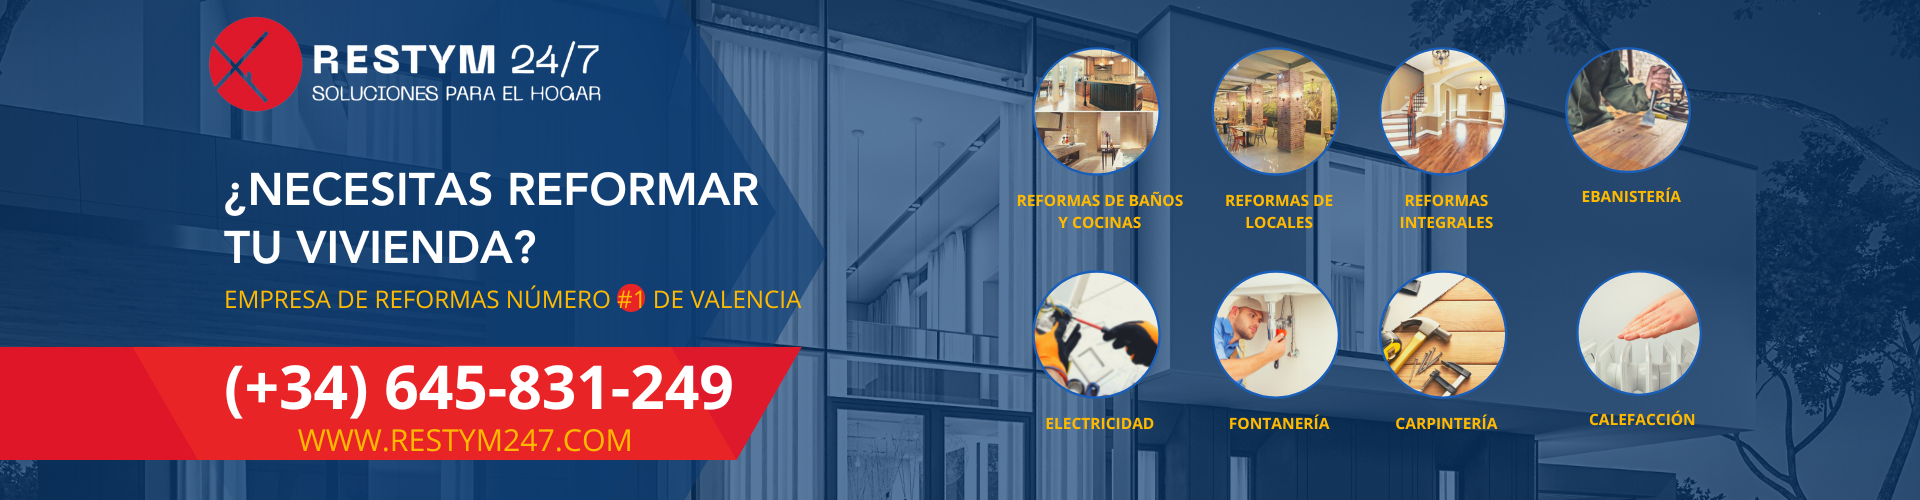 Descubre cómo nuestra empresa de reformas en Valencia puede transformar tu hogar: Reformas integrales de alta calidad a medida